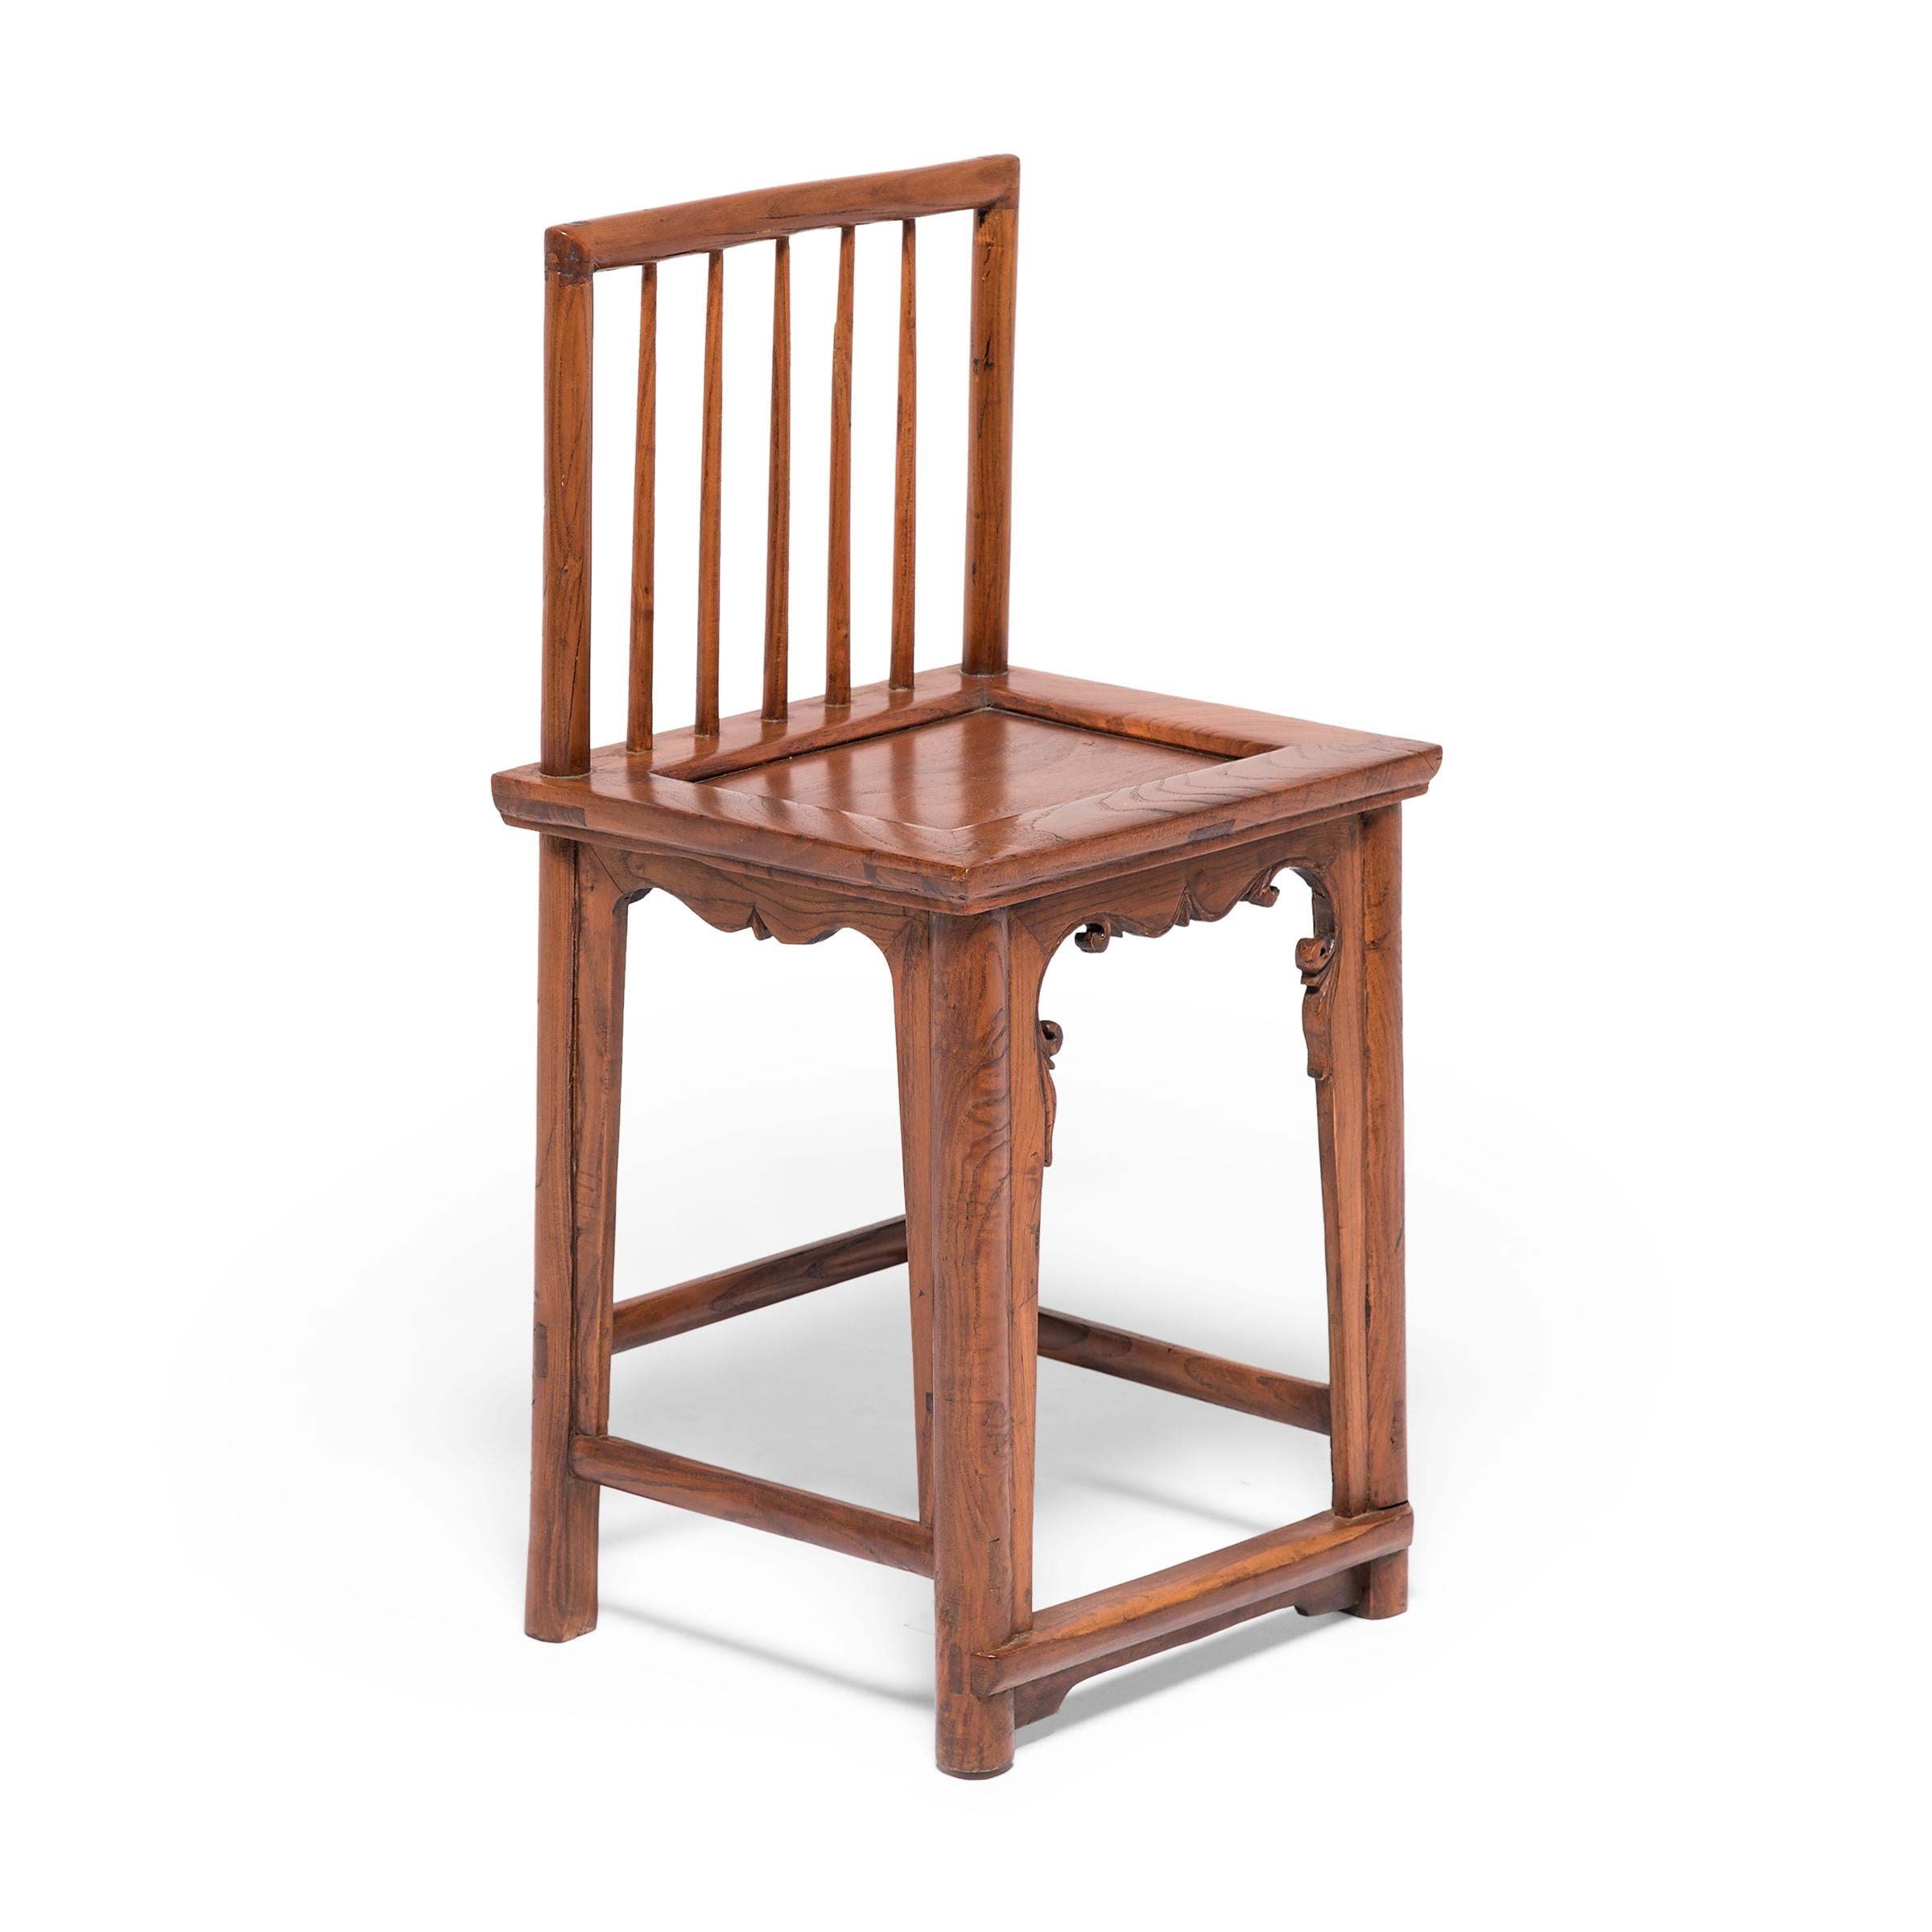 Cette paire de chaises en noyer du début du XXe siècle doit son design gracieux aux styles et techniques apparus sous la dynastie Ming, l'âge d'or du mobilier chinois. Les lignes épurées de la forme en fuseau sont interrompues par des tabliers